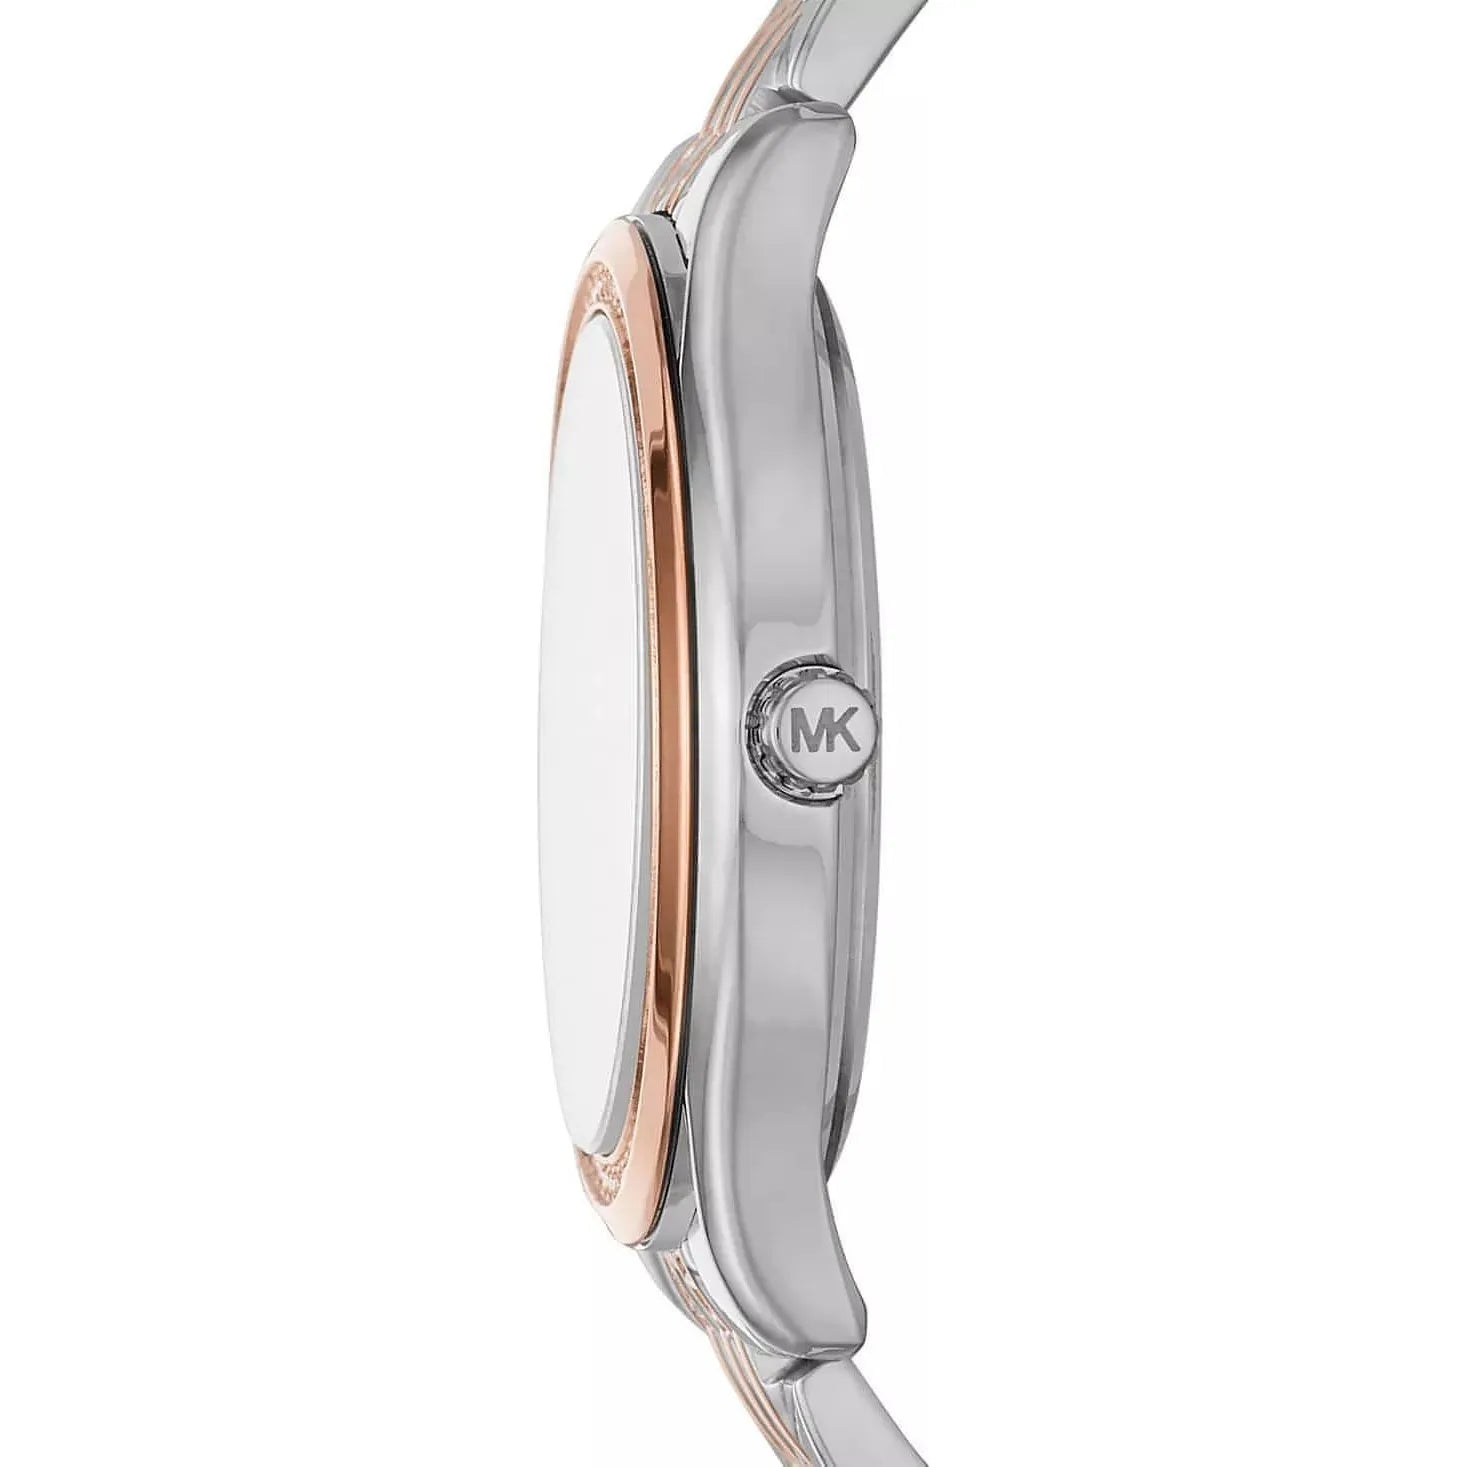 Michael Kors Women's Watch - Mindy Two-Tone Stainless Steel Bracelet Watch 36mm (MK7077) - Brandat Outlet